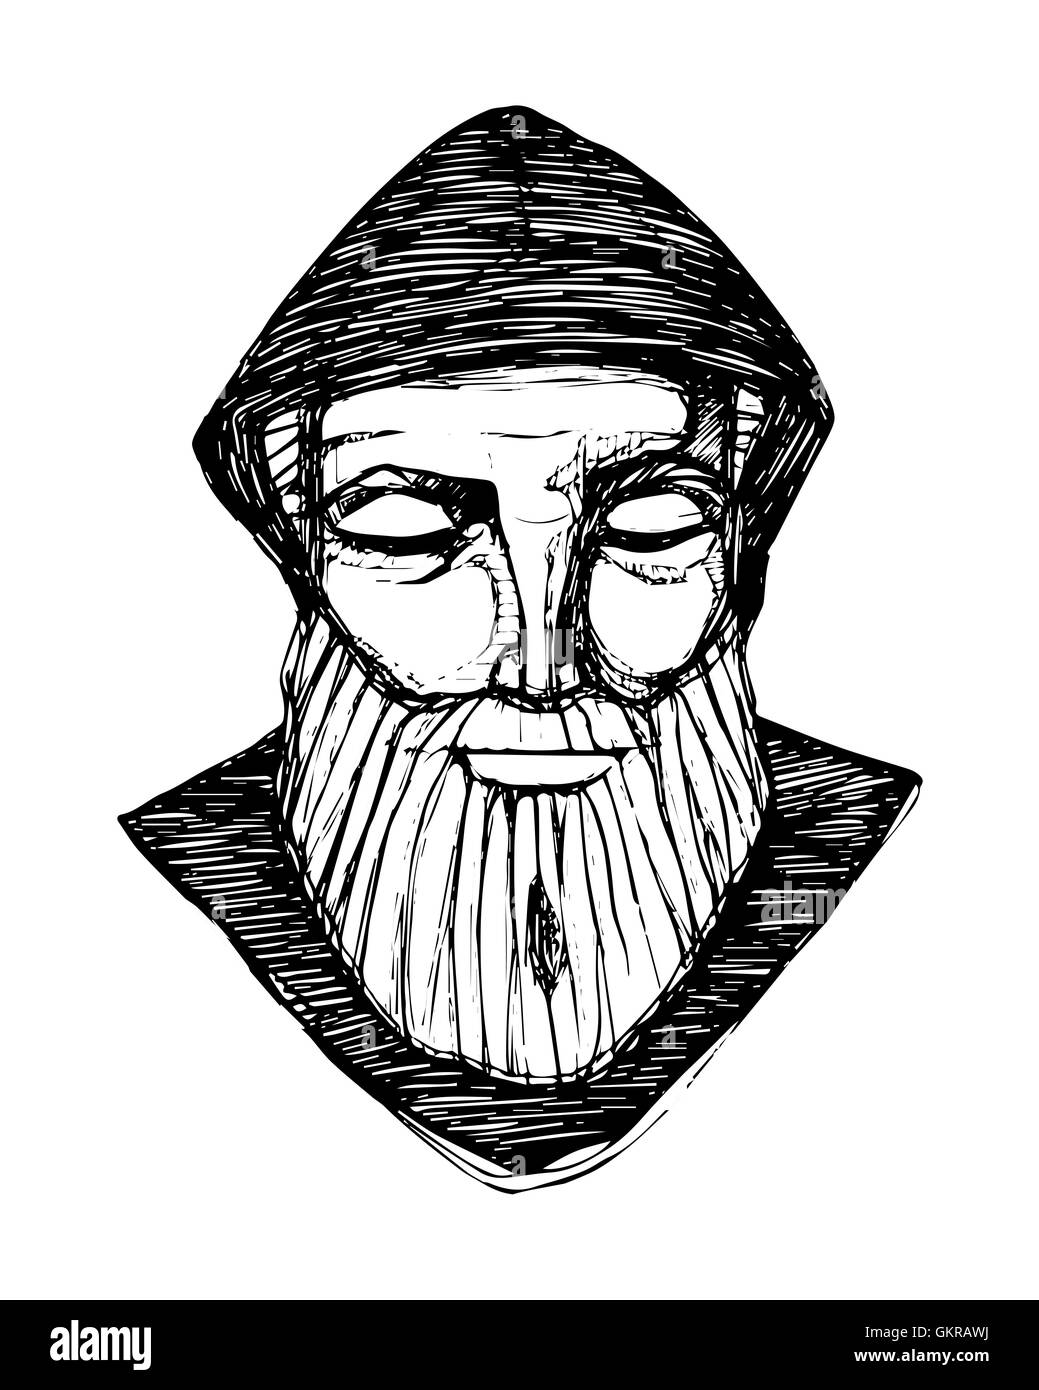 Hand drawn vector illustration ou dessin d'un moine en méditation Banque D'Images